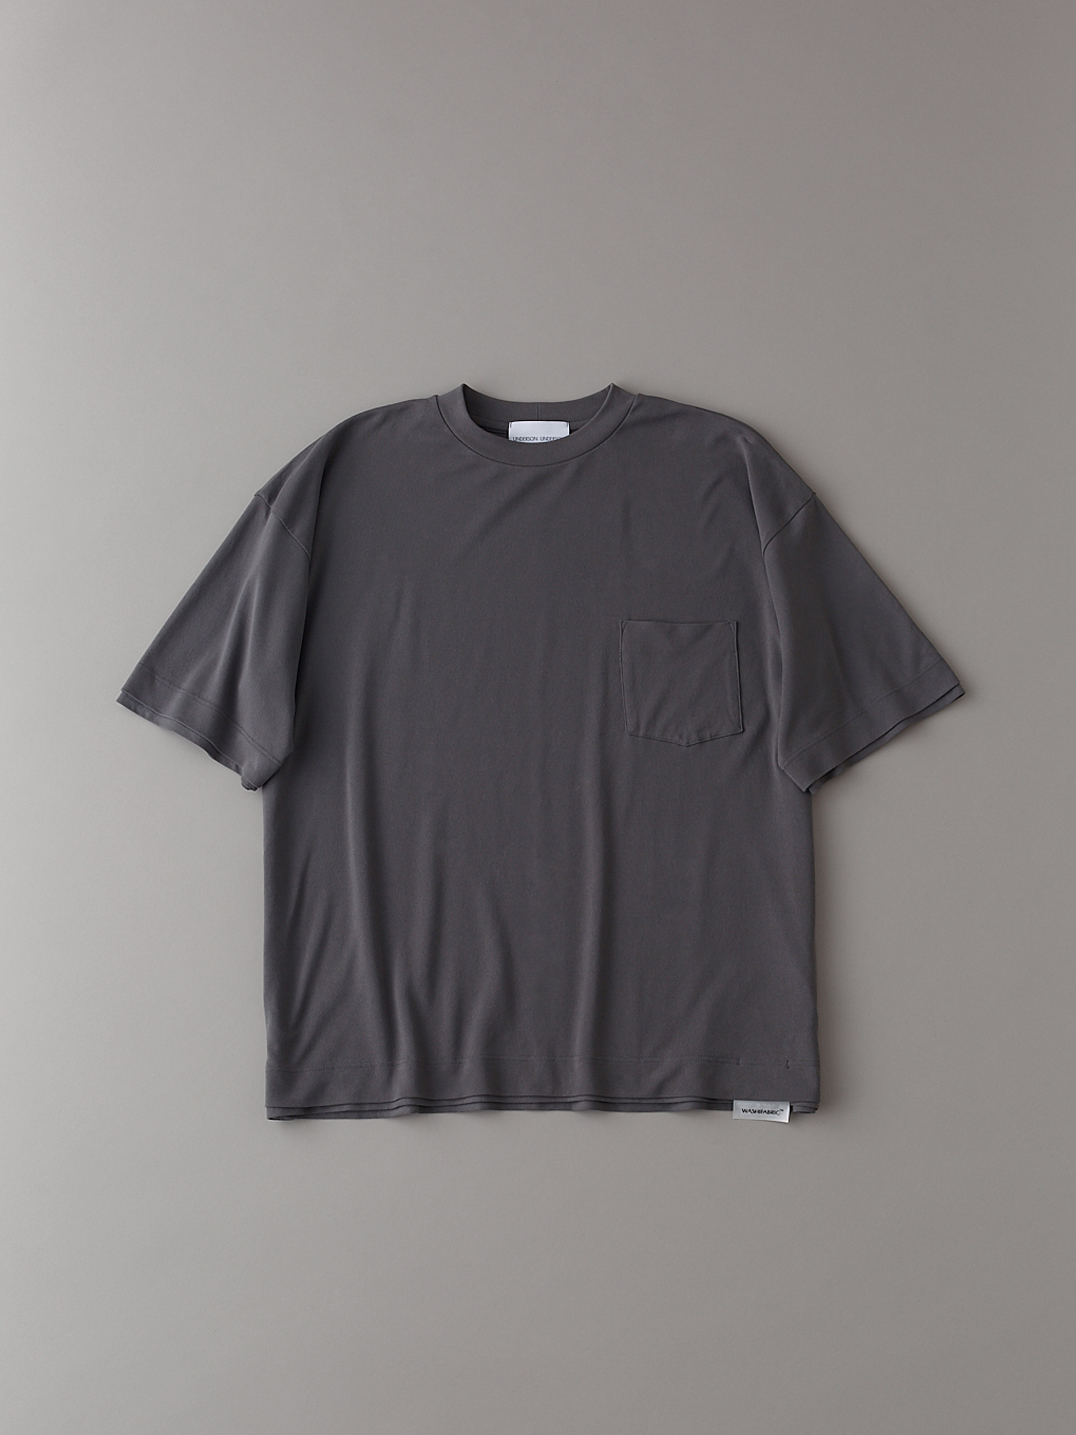 オールダブルTシャツ【メンズ】(CGRY-1)